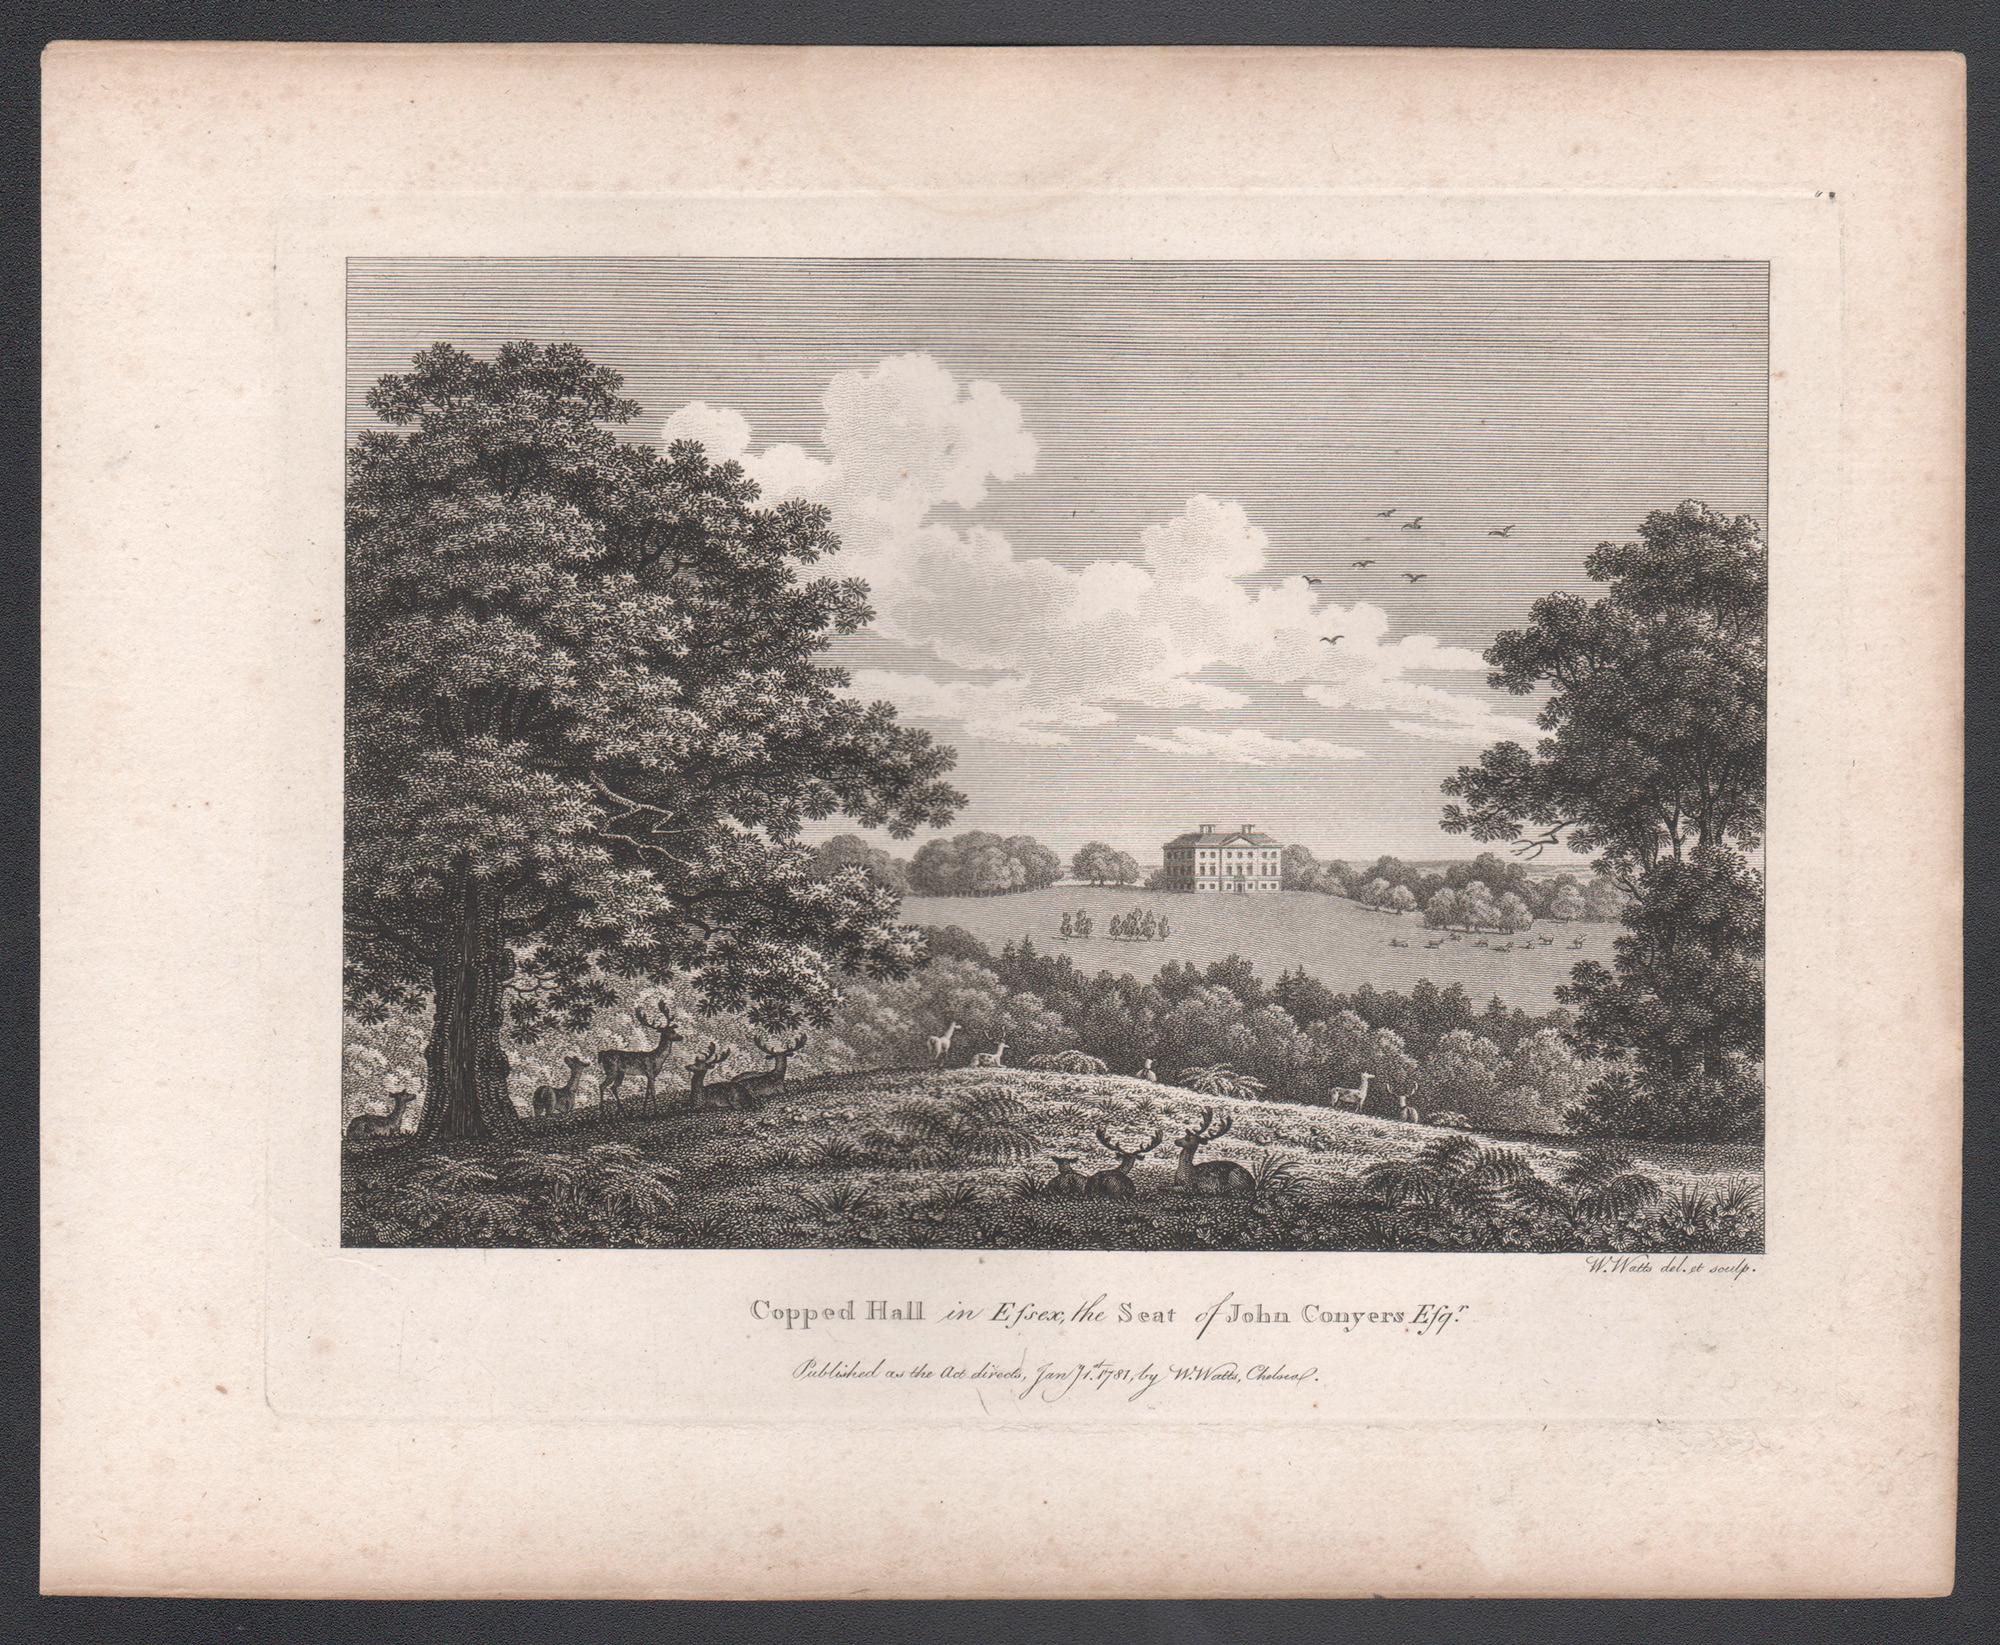 Copped Hall in Essex, englische Landhausgravur des 18. Jahrhunderts, 1781 – Print von William Watts